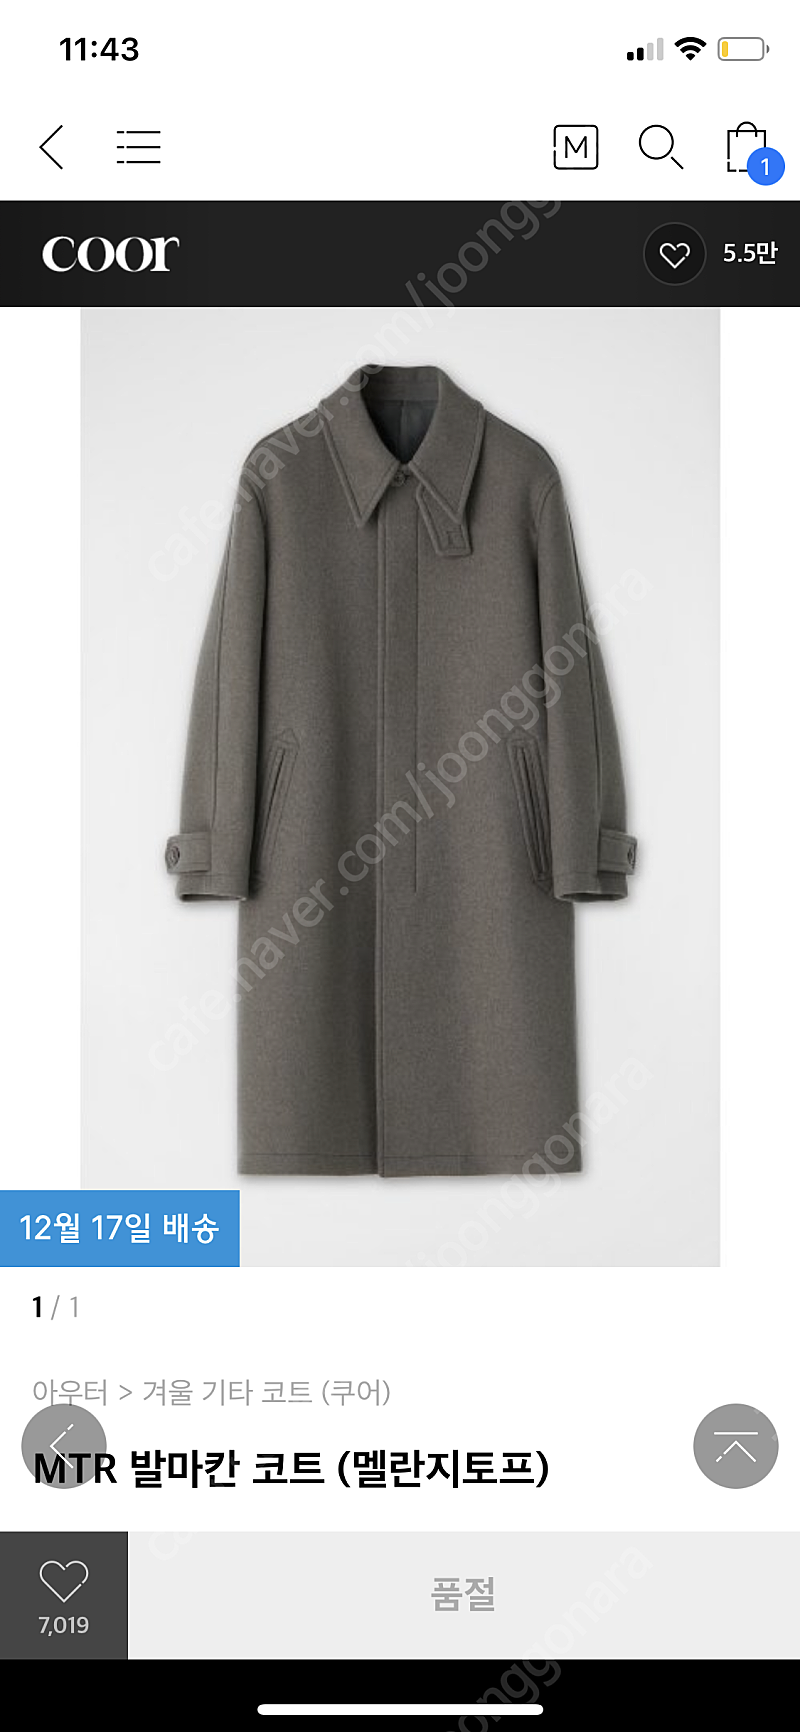 쿠어 발마칸 코트 딥브라운/멜란지토프 L 구매